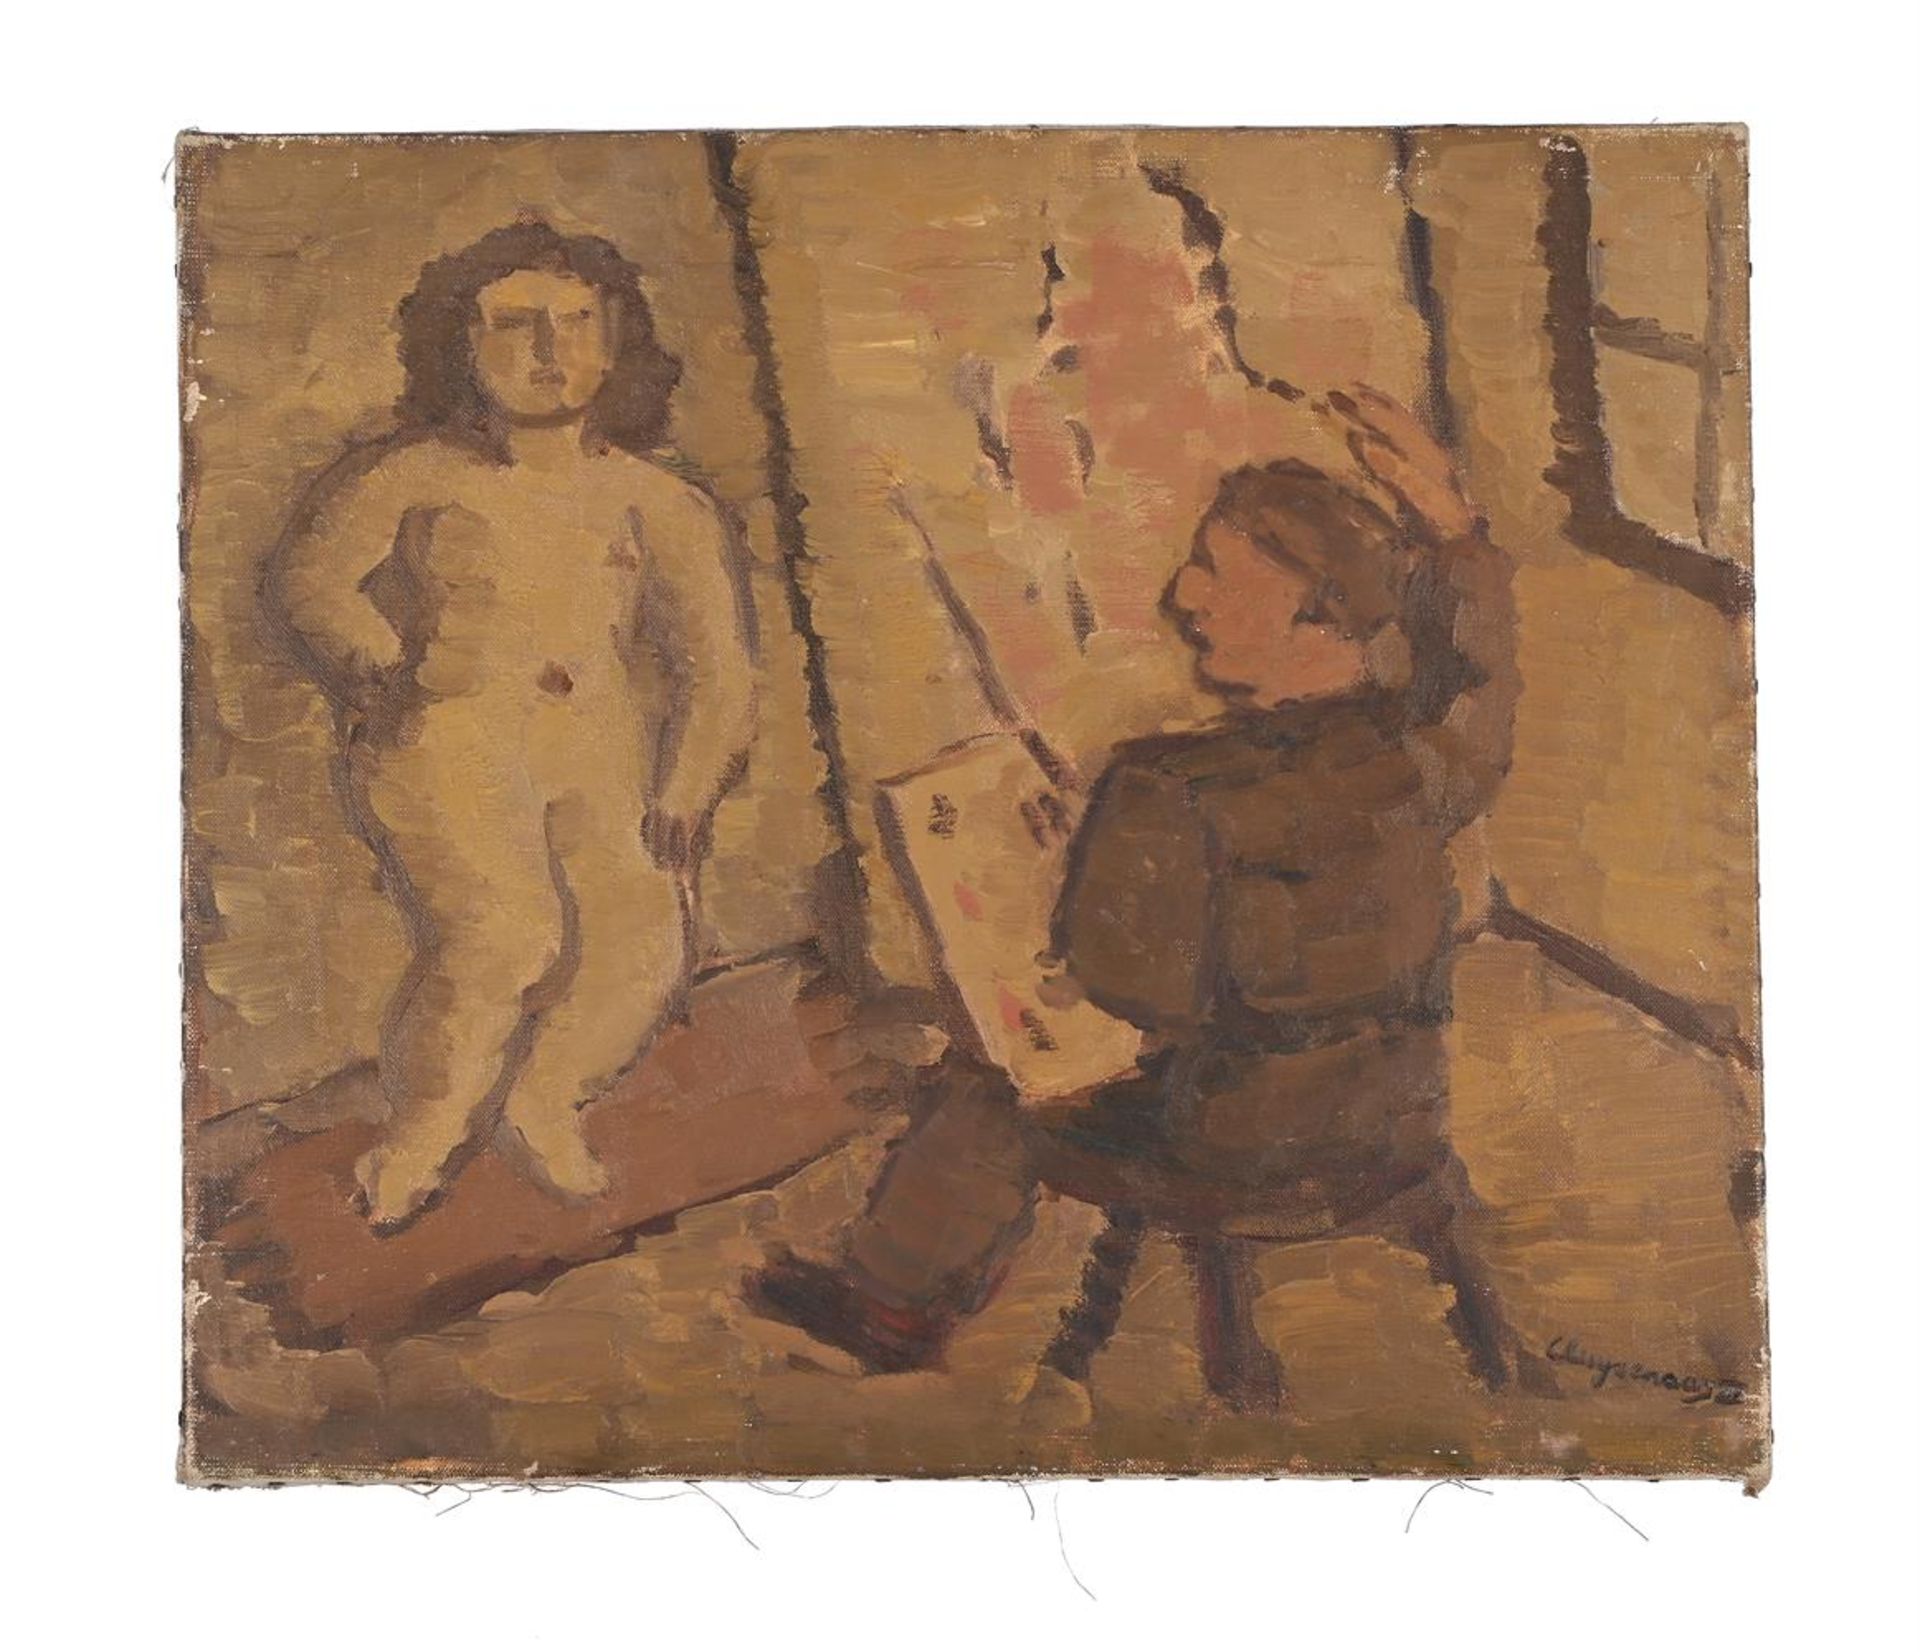 λ JOHN CLUYSENAAR (BELGIAN 1899-1986), LIFE DRAWING IN THE ARTIST'S STUDIO